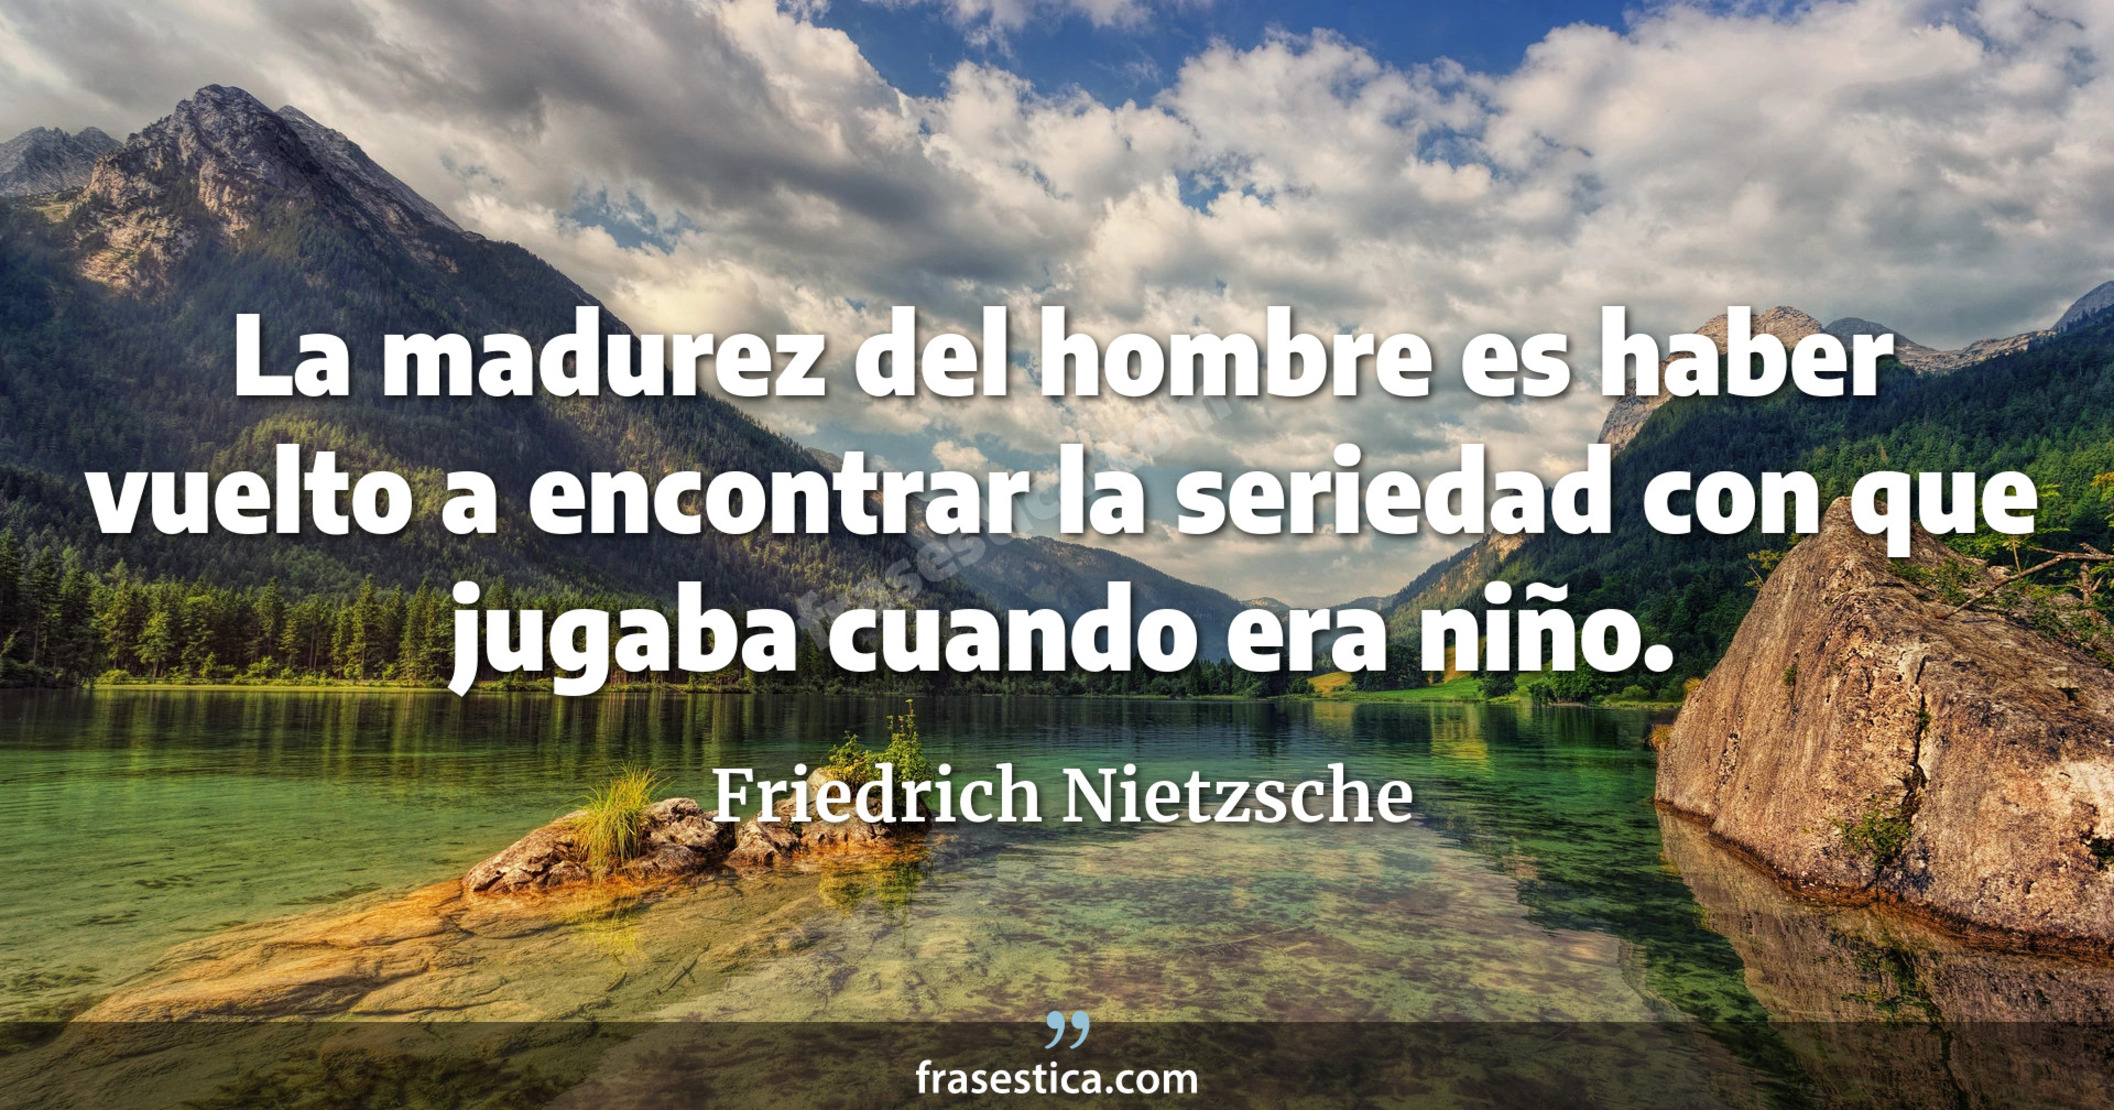 La madurez del hombre es haber vuelto a encontrar la seriedad con que jugaba cuando era niño. - Friedrich Nietzsche